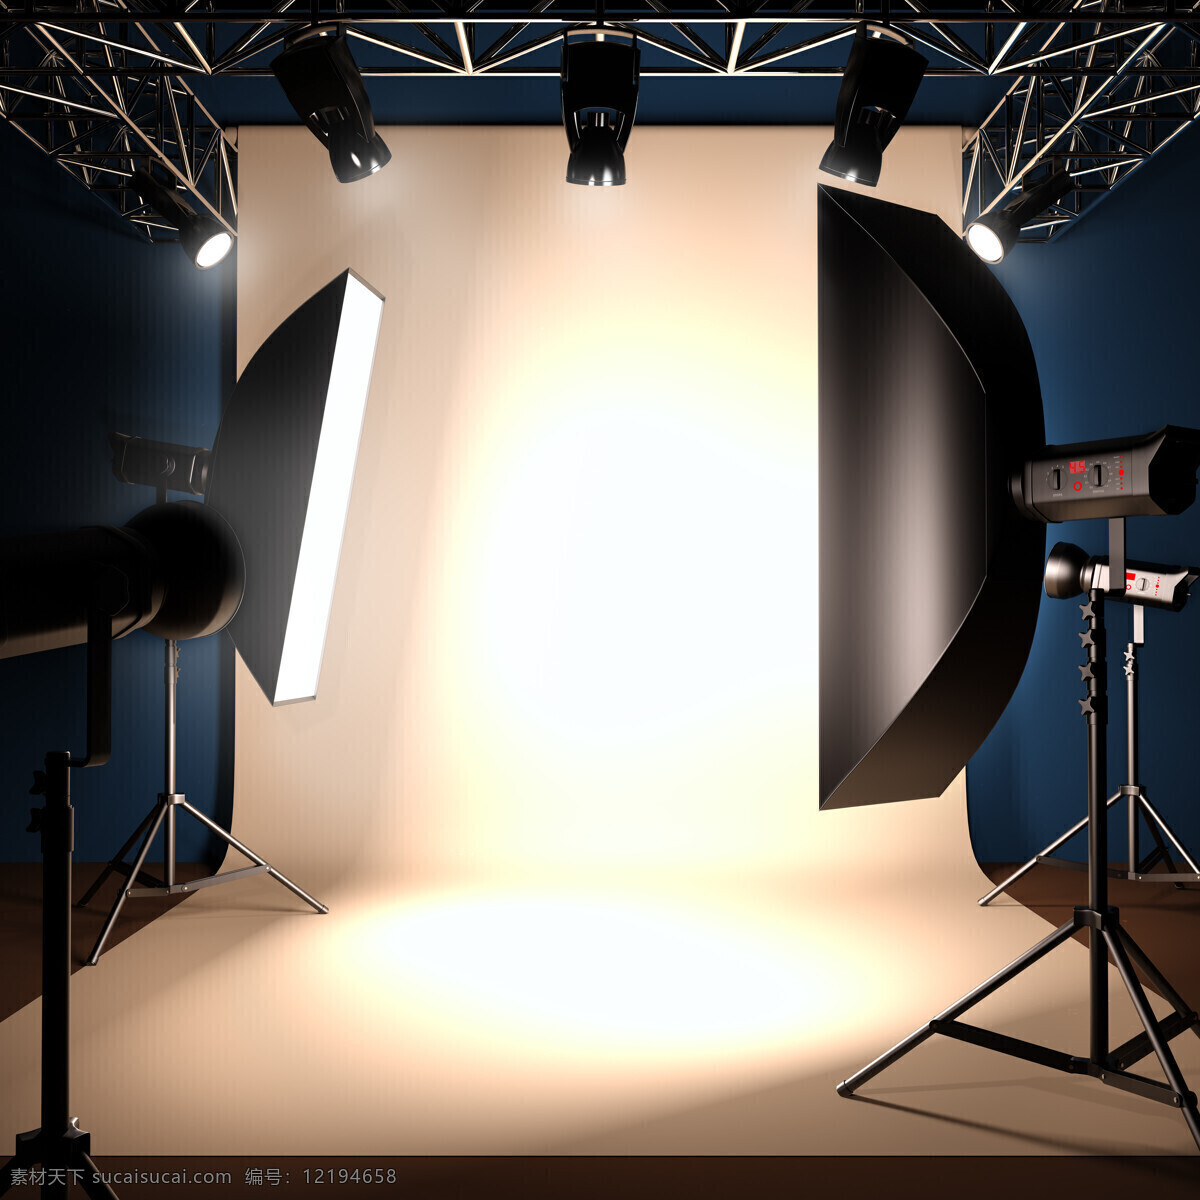 工作室 摄影工作室 摄影灯 背景面 摄影灯光 室内设计 环境家居